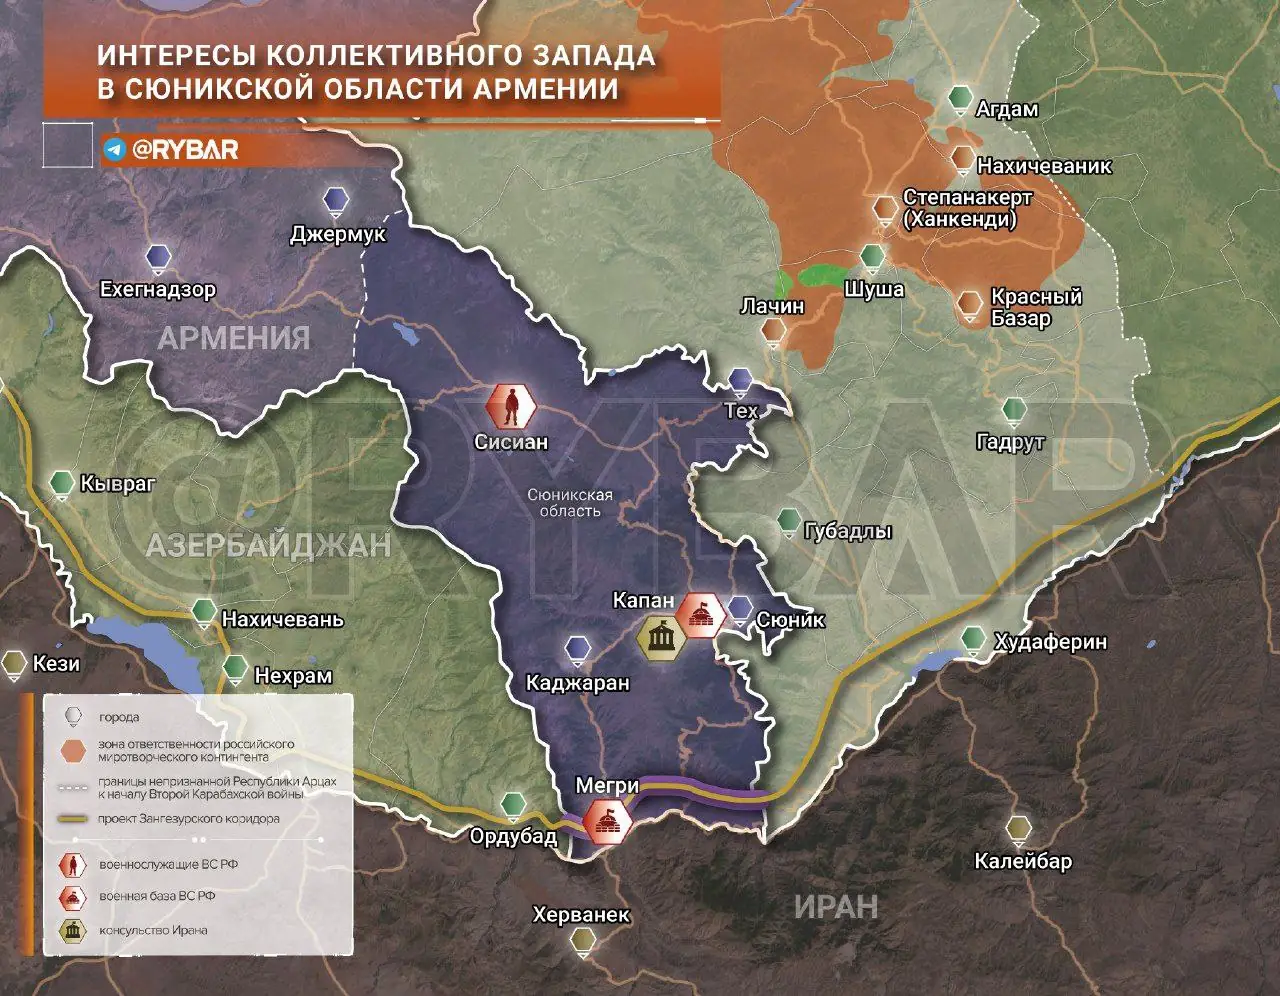 Об интересе европейских чиновников к Сюникской области Армении